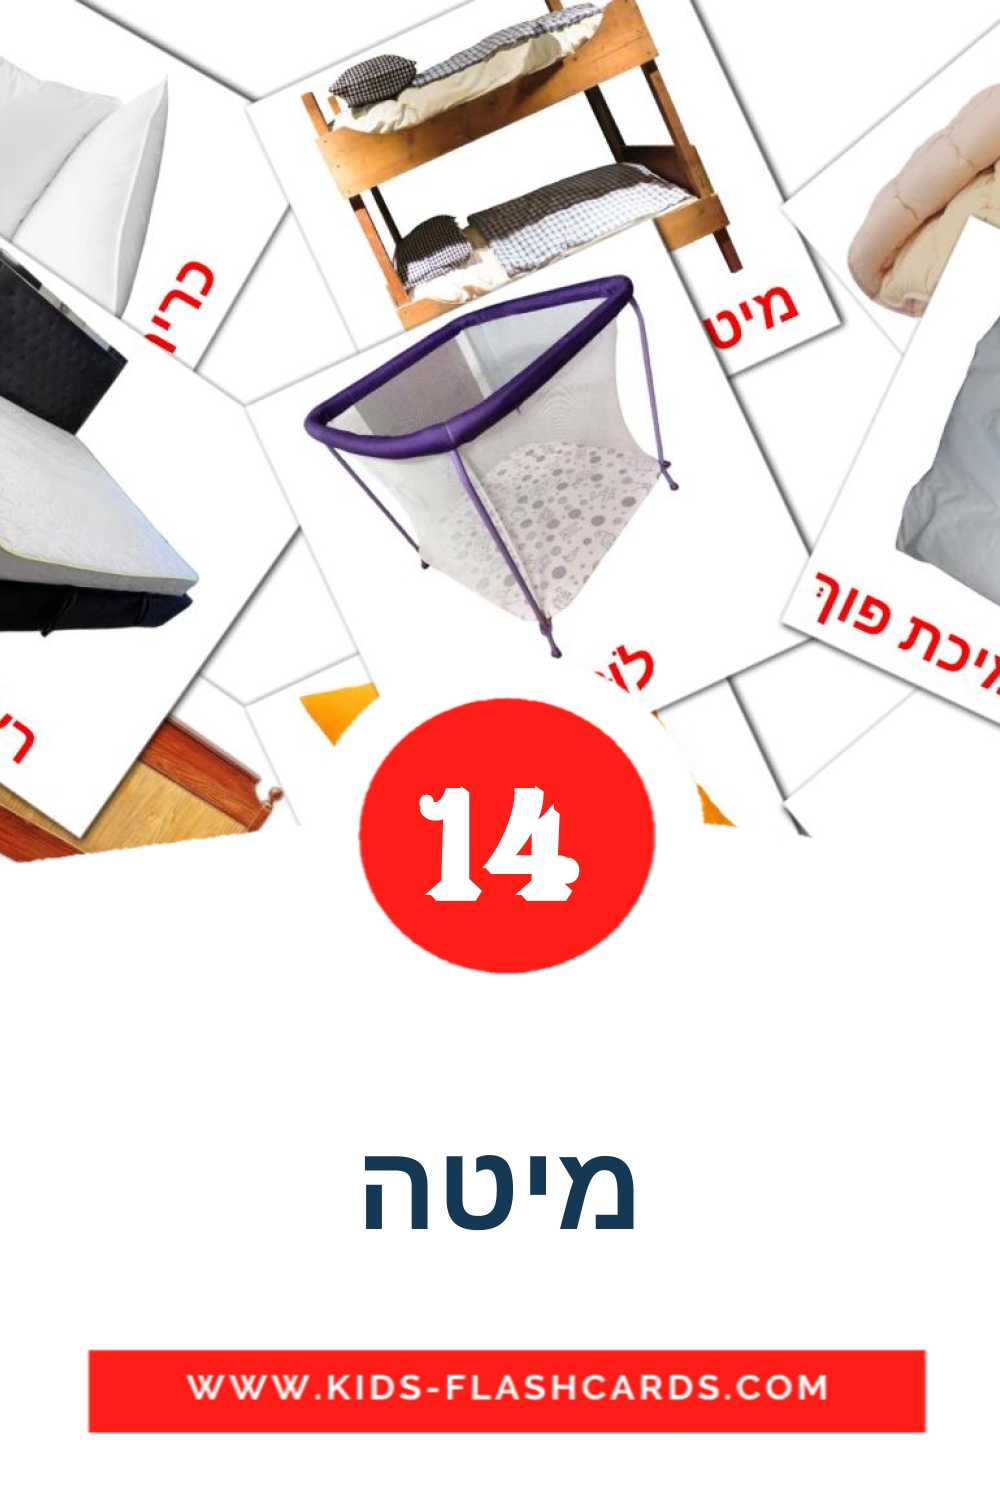 14 carte illustrate di מיטה per la scuola materna in hebreo